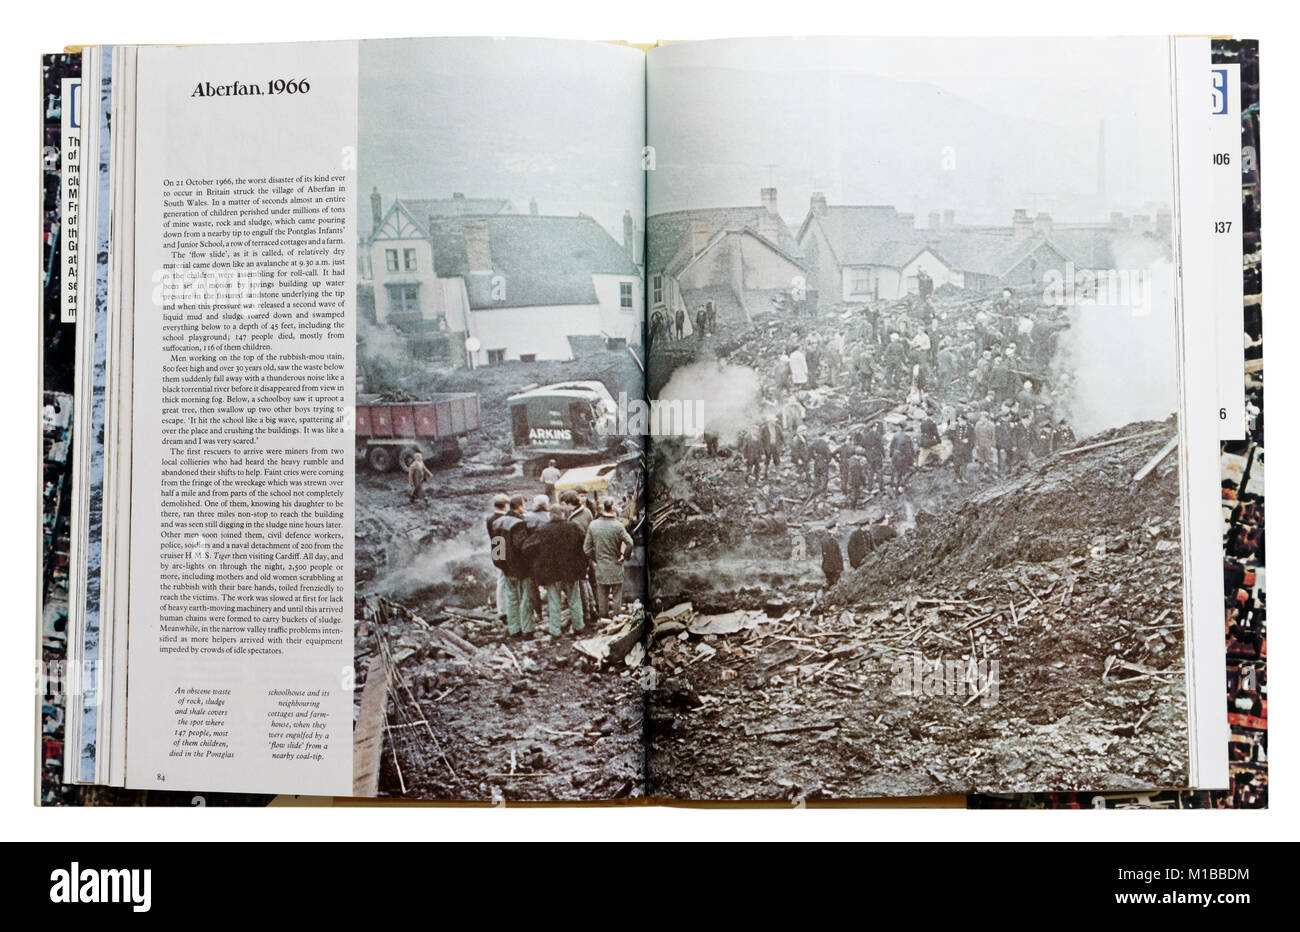 Un livre de catastrophes naturelles ouvert à la page sur l'exploitation minière disater Aberfan 1966 Banque D'Images